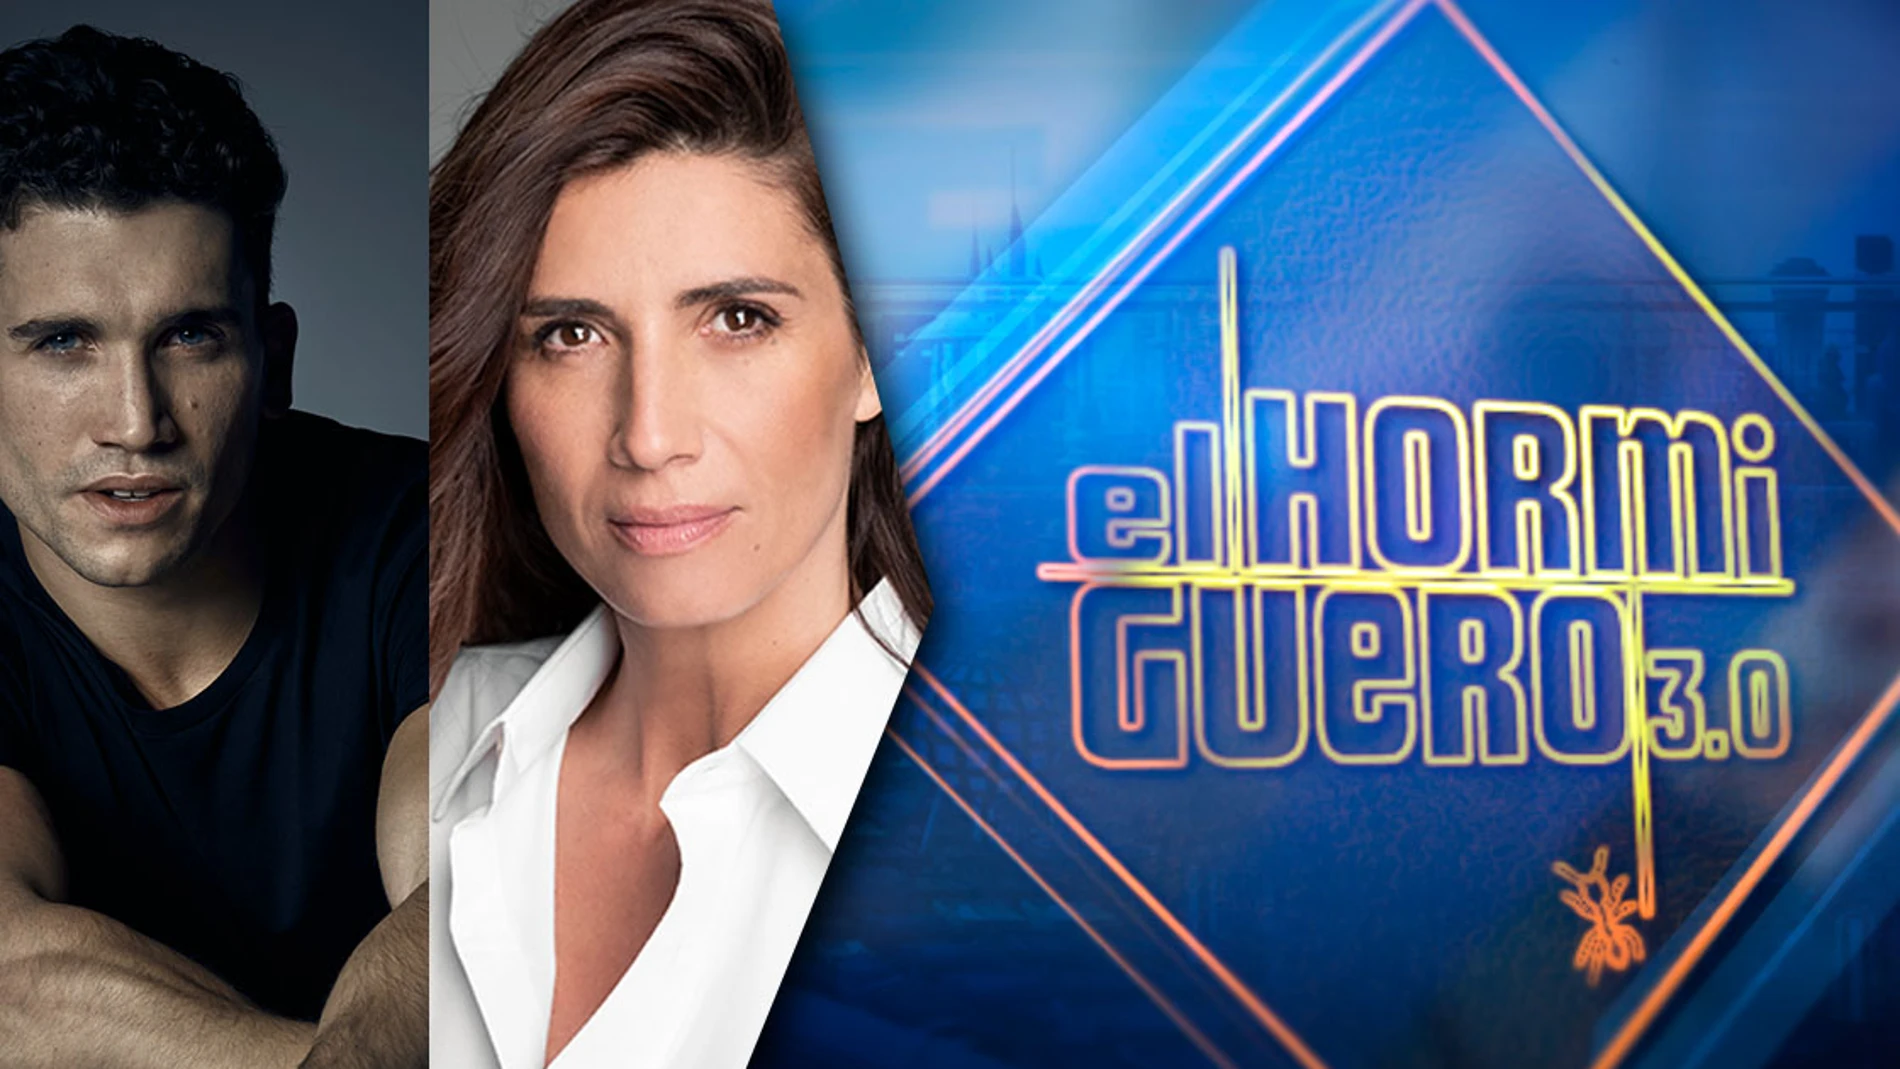 Jaime Lorente y Elia Galera visitan 'El Hormiguero 3.0' este lunes